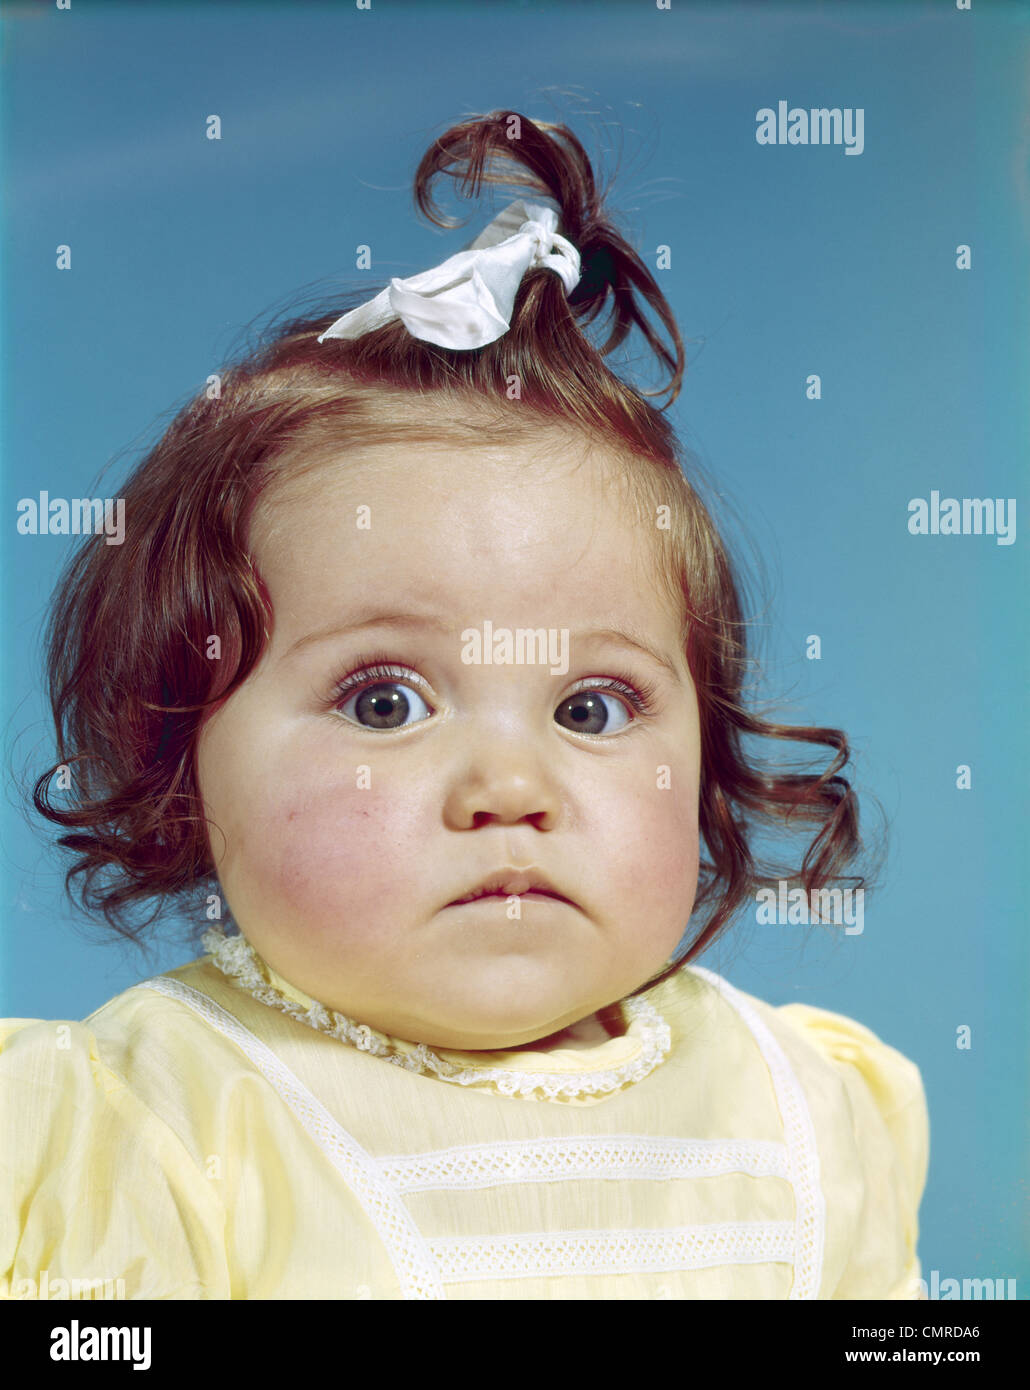 1960ER JAHRE BRÜNETTE BABY GIRL BAND HAARKNOTEN GELBE SHIRT MOLLIG WANGEN RUNDES GESICHT TRAURIG UNGLÜCKLICH GESICHTSAUSDRUCK BLICK IN DIE KAMERA Stockfoto